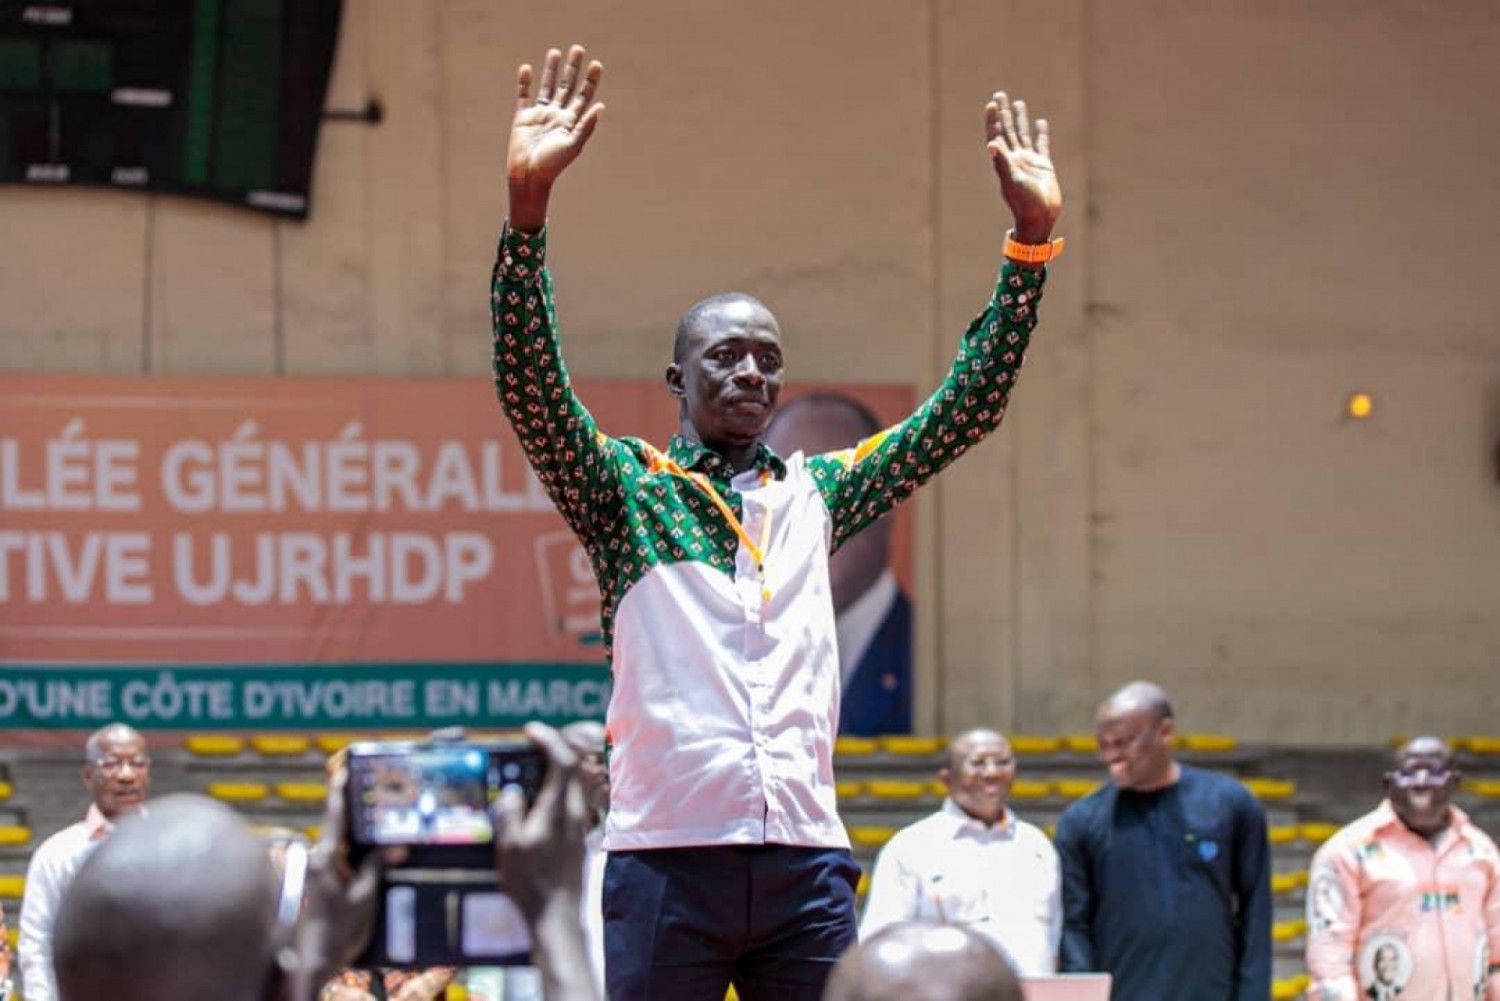 Côte d'Ivoire : A.G élective de l'UJ-RHDP, Koné Mamadou déclaré vainqueur, son challenger crie à l'injustice et quitte la salle avant la fin des travaux